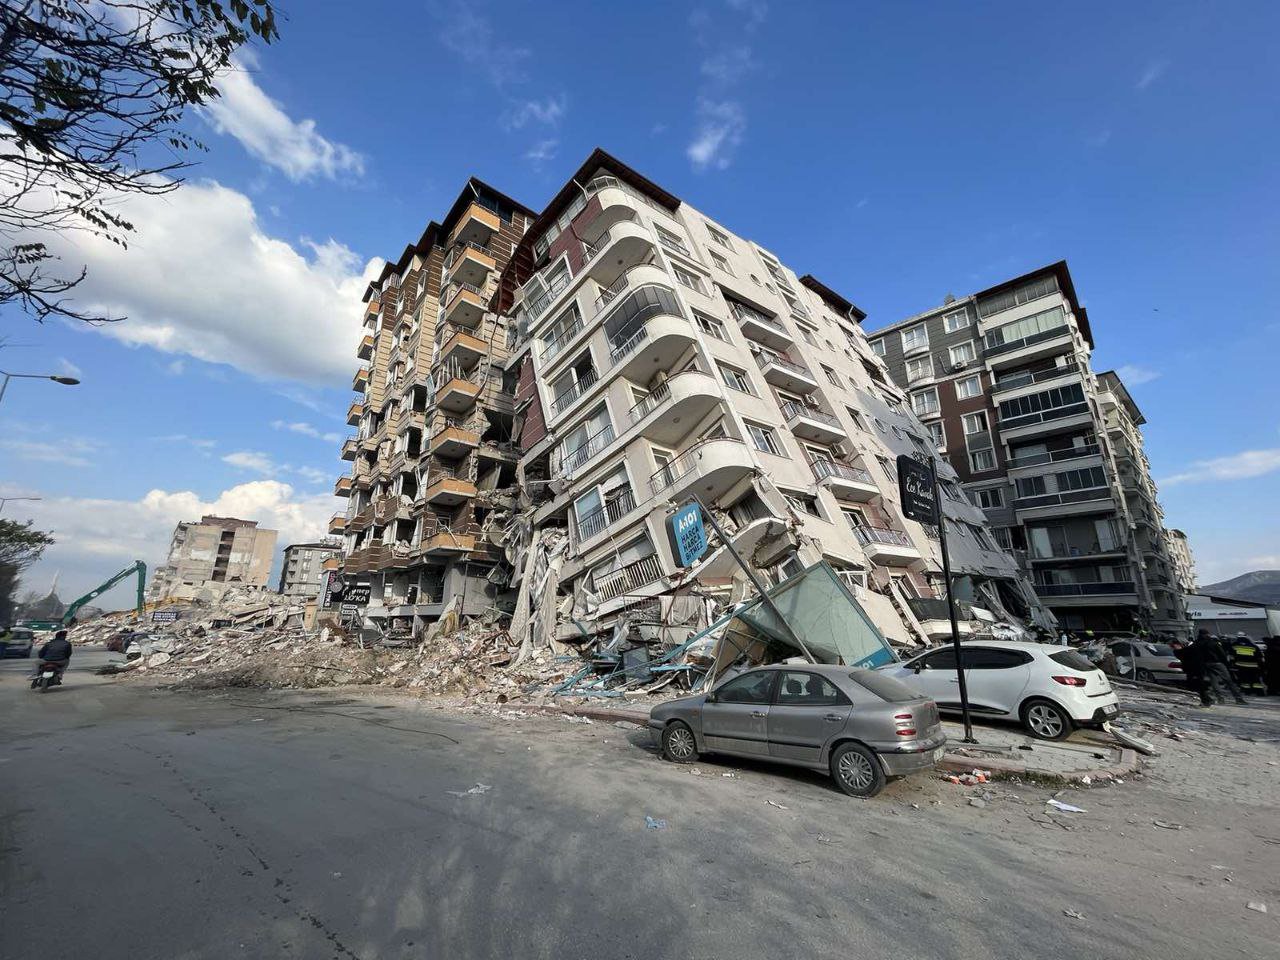 Numărul morților după cutremurul din Turcia depășește cifra de 20 mii. Salvatorii moldoveni continuă să activeze alături de colegii lor